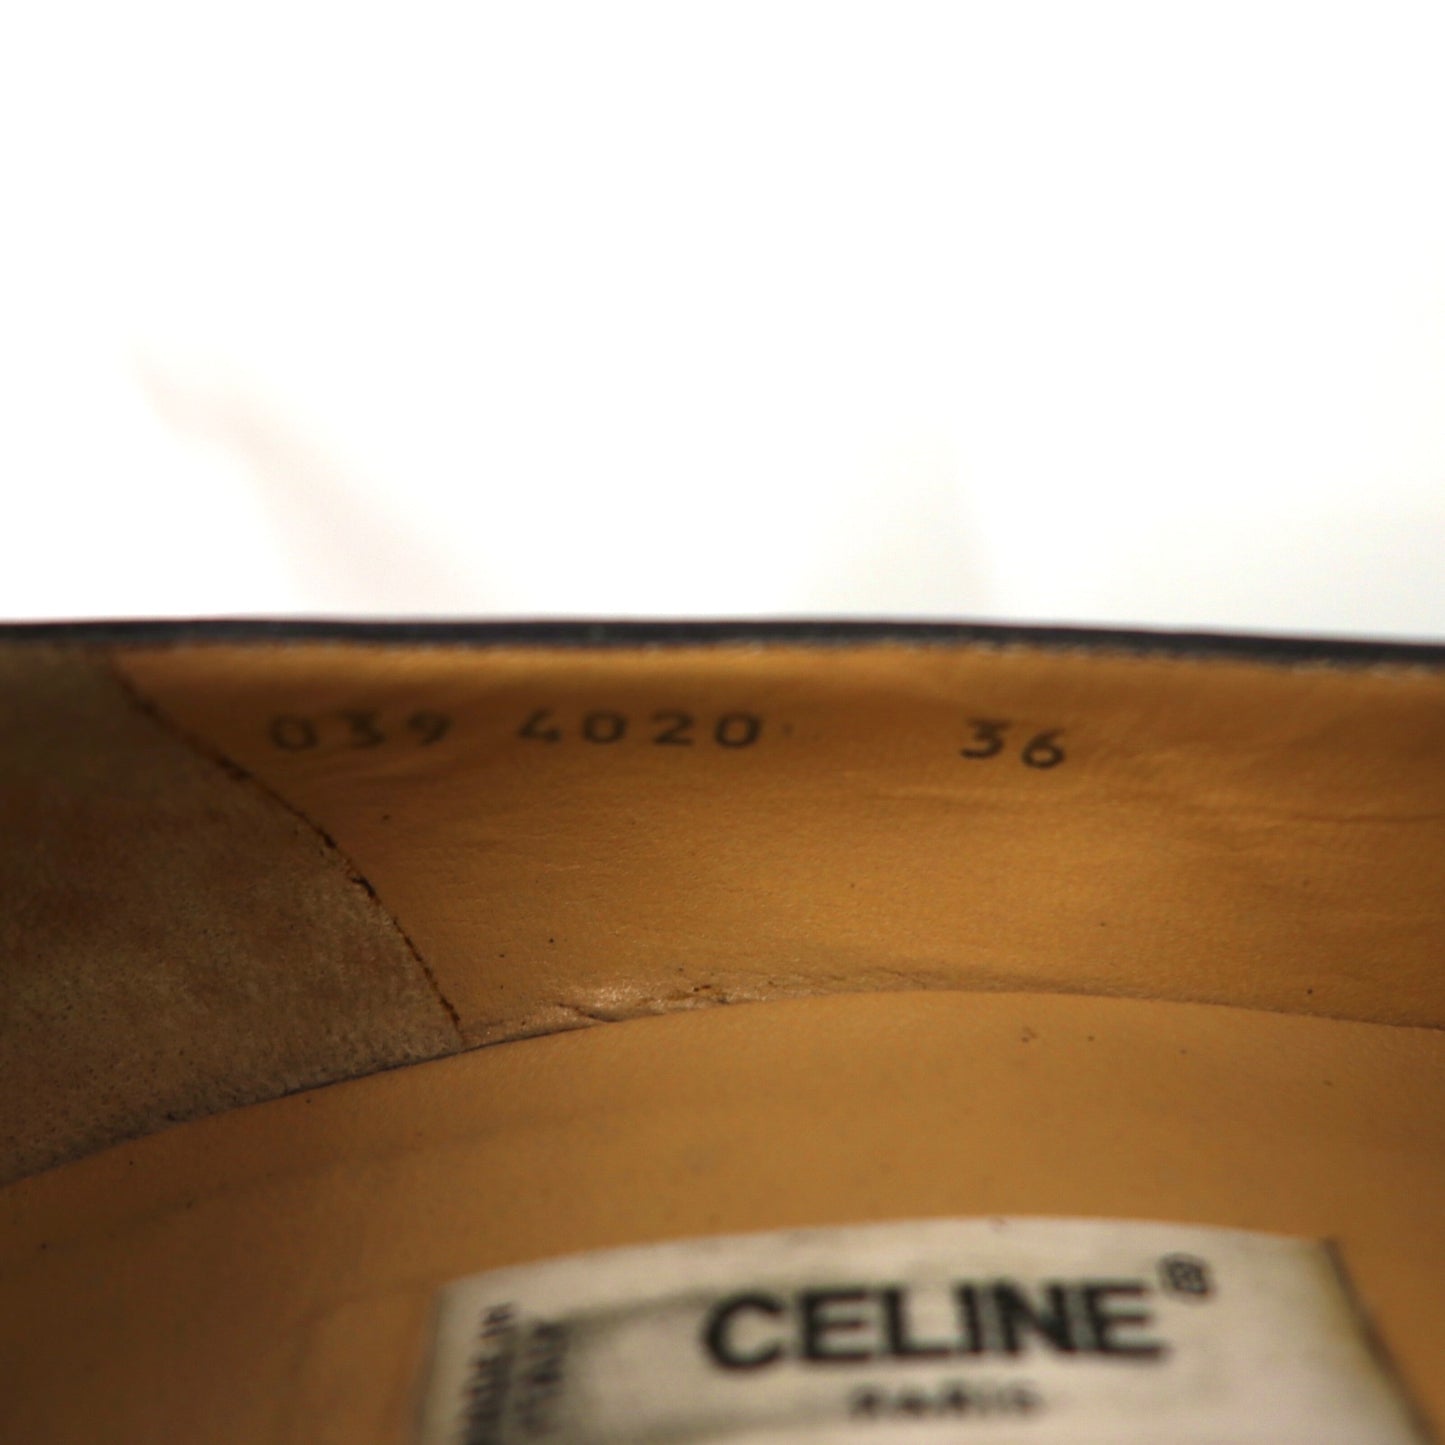 CELINE チャンキーヒールパンプス 23cm ブラック レザー オールド イタリア製